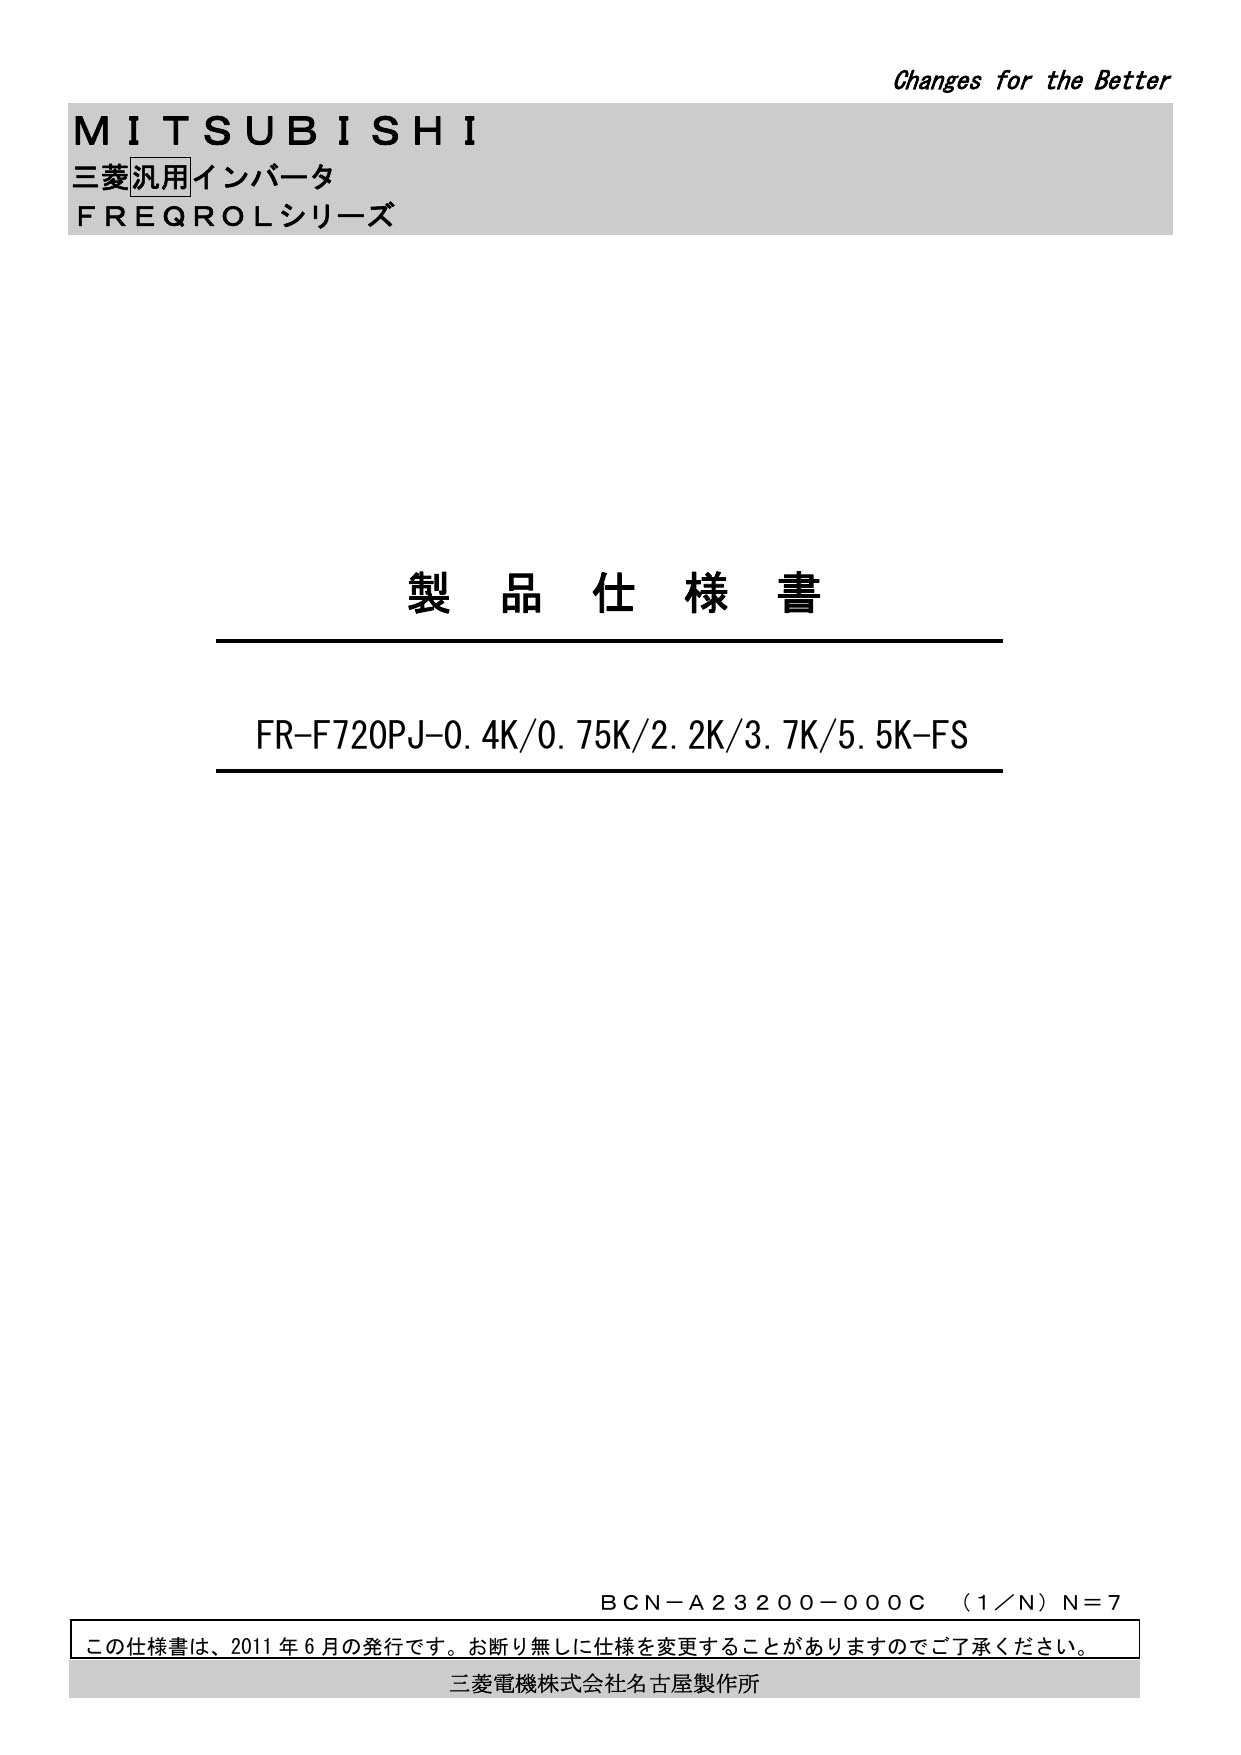 当店の記念日 三菱 FR-F720PJ-3.7K-FS ファンインバーター3相200V